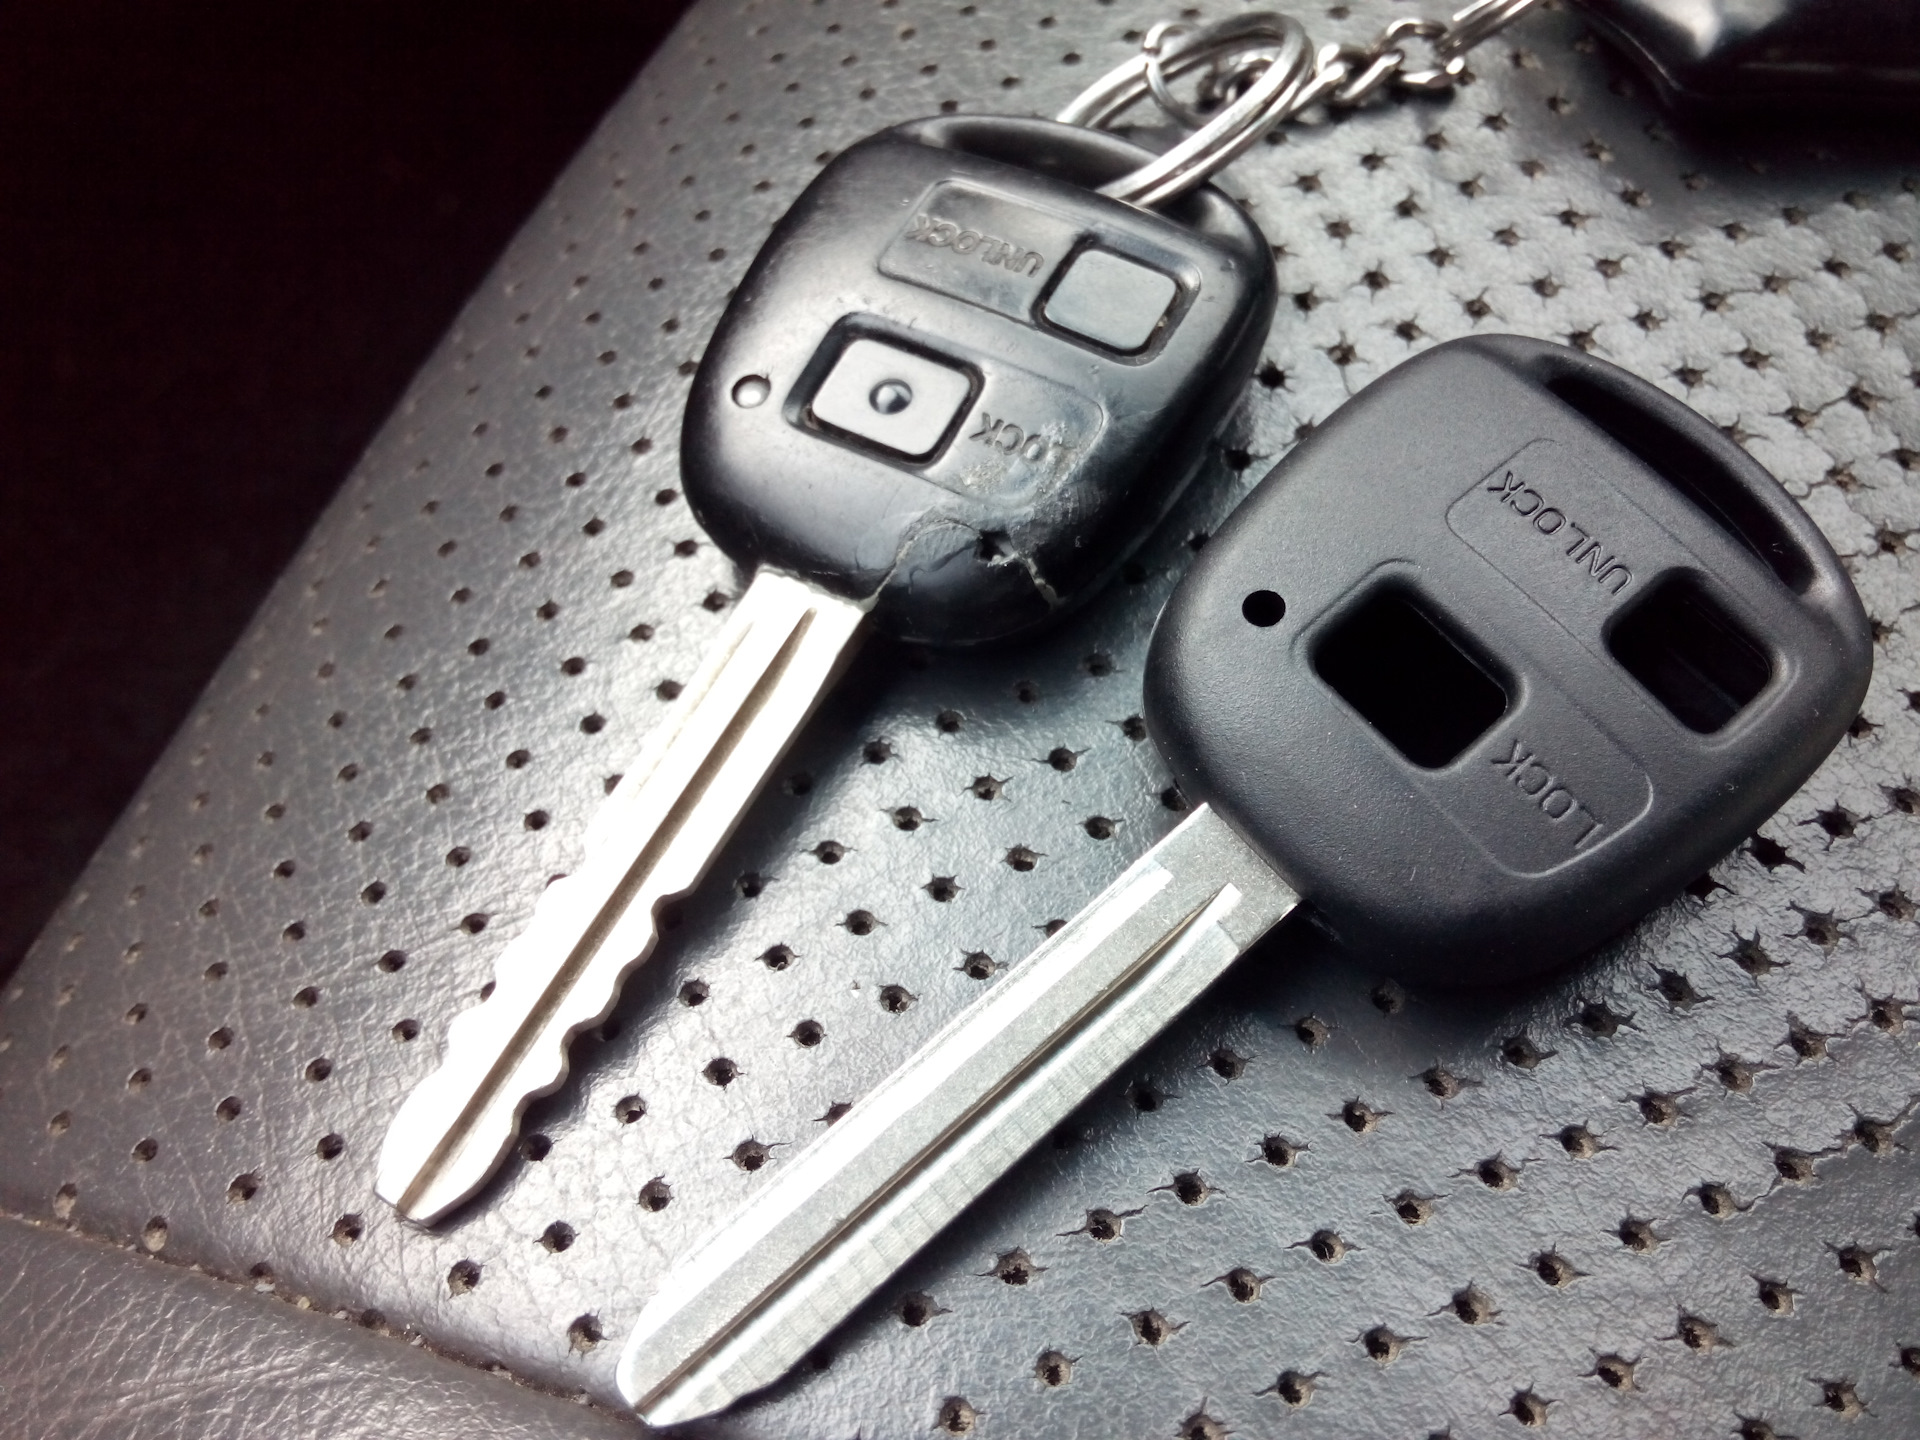 Ключ тойота рав. Toyota rav4 ключ зажигания. Тойота рав 4 ключ зажигания. Ключ Тойота рав 4 2 поколения. Ключ замка зажигания Toyota rav4.